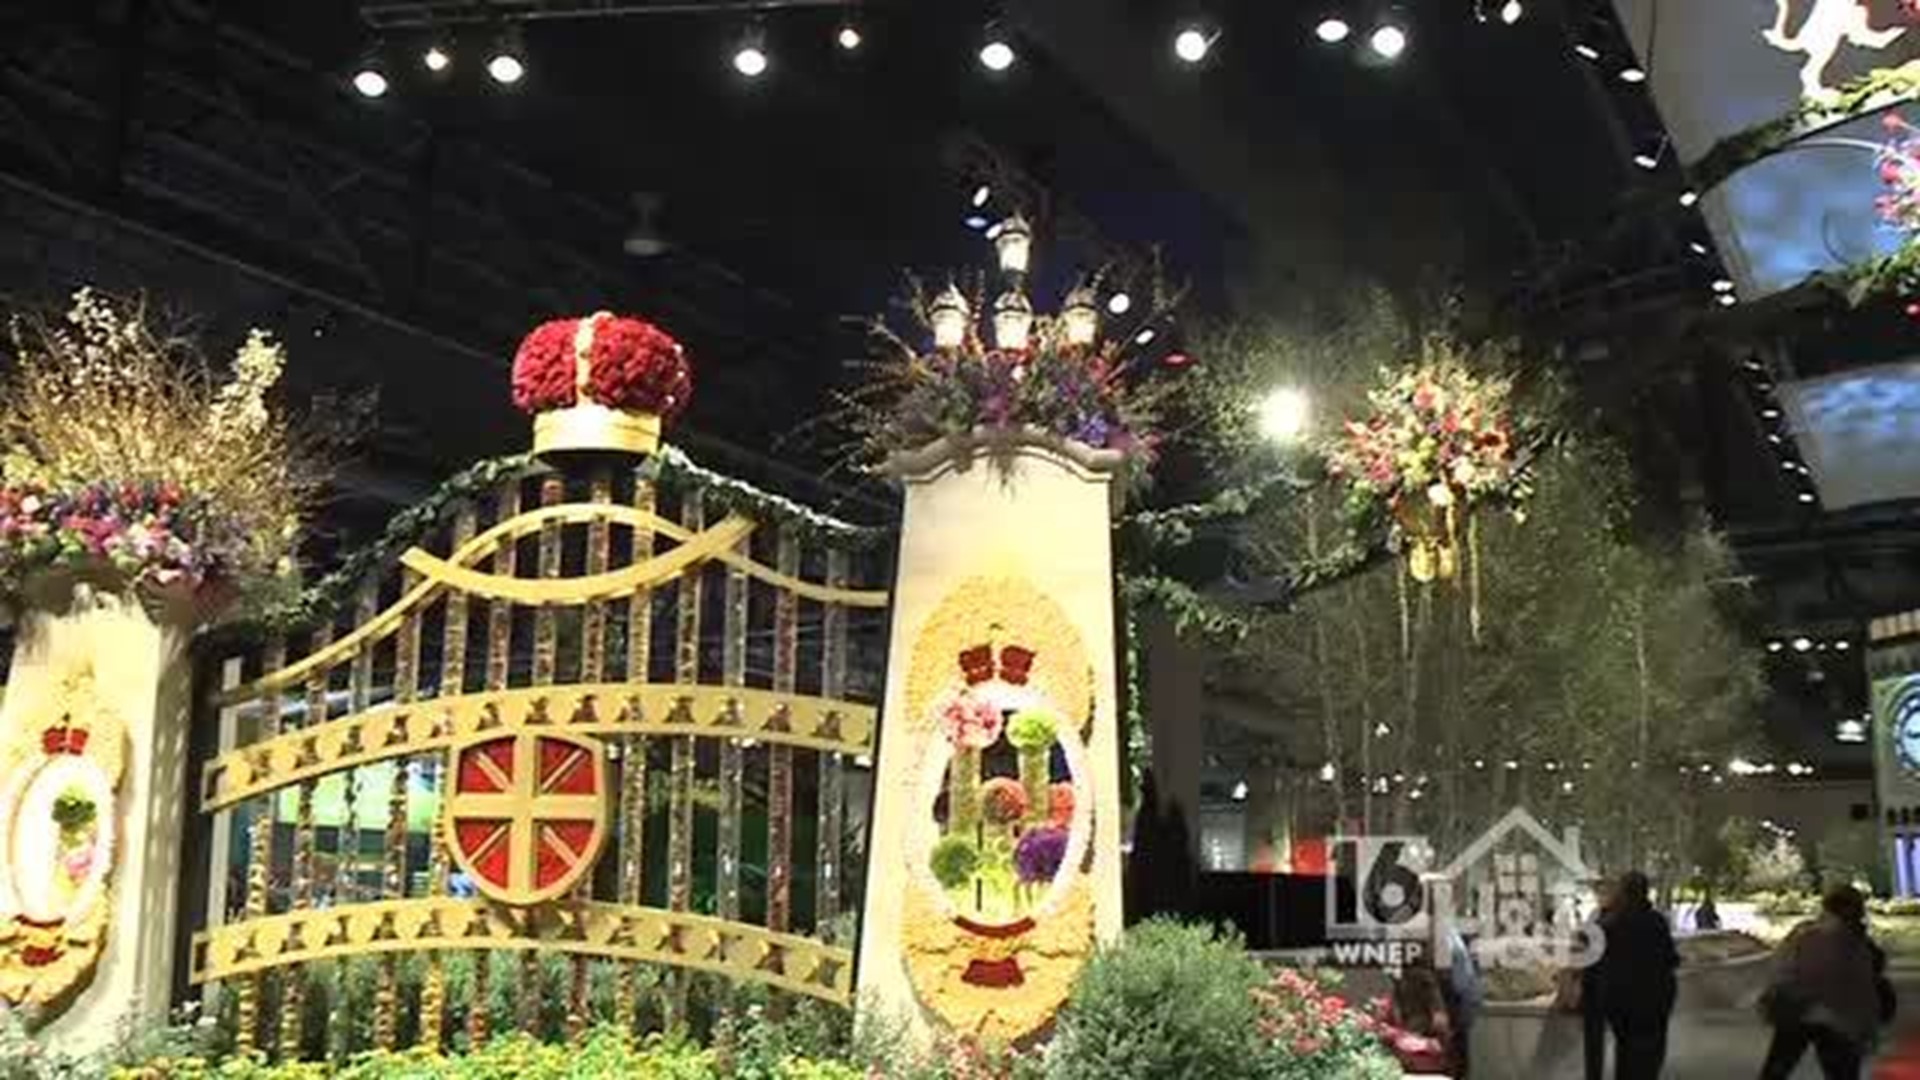 Philadelphia Flower Show: Central Feature